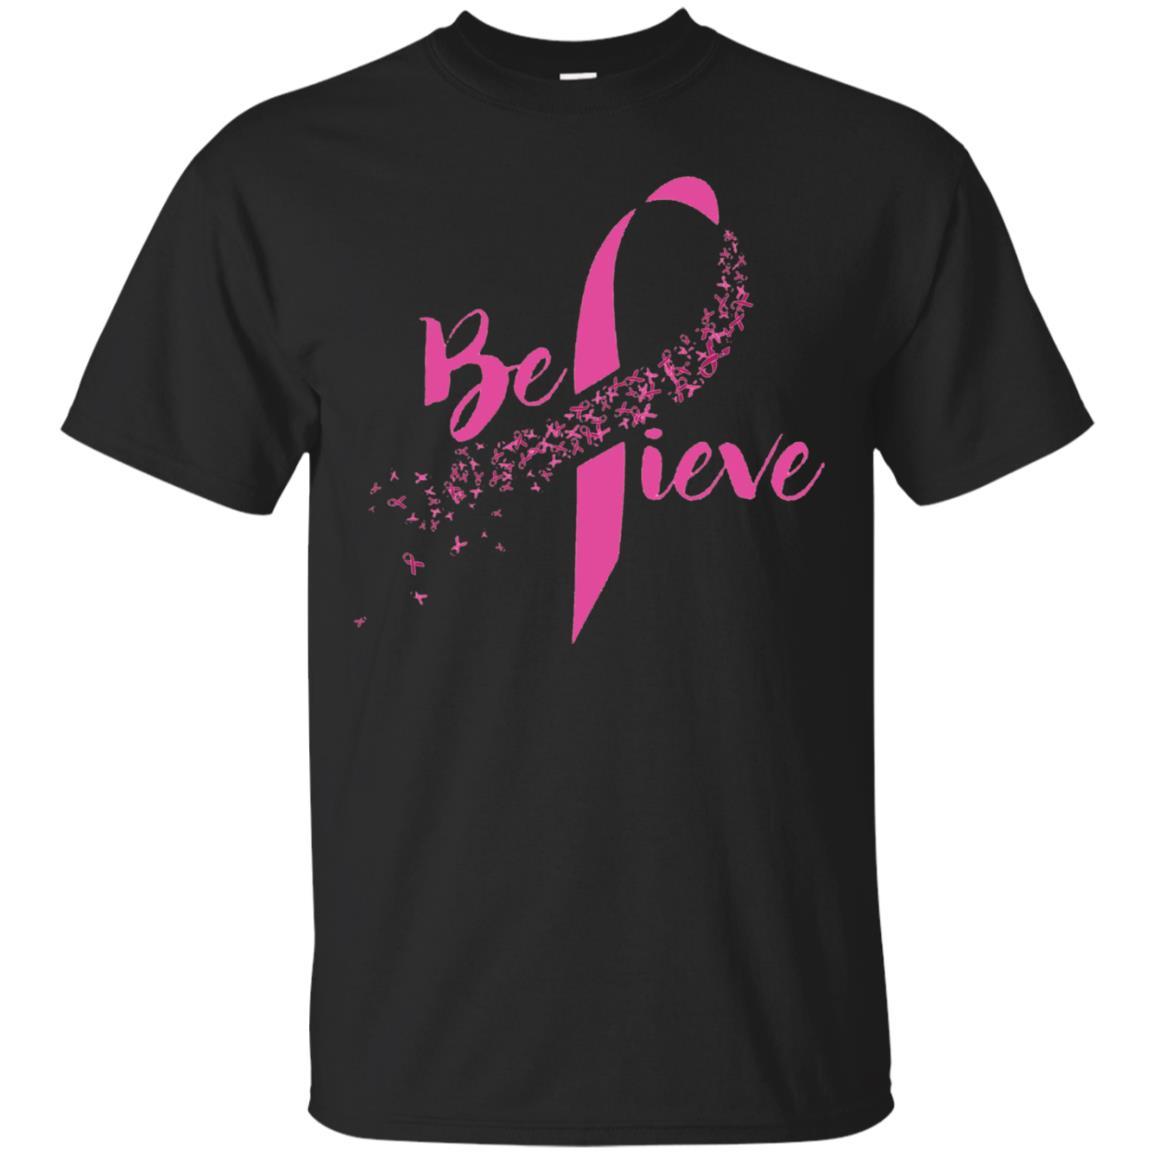 Breast Cancer Awareness - Inspirational Believe T-shirt